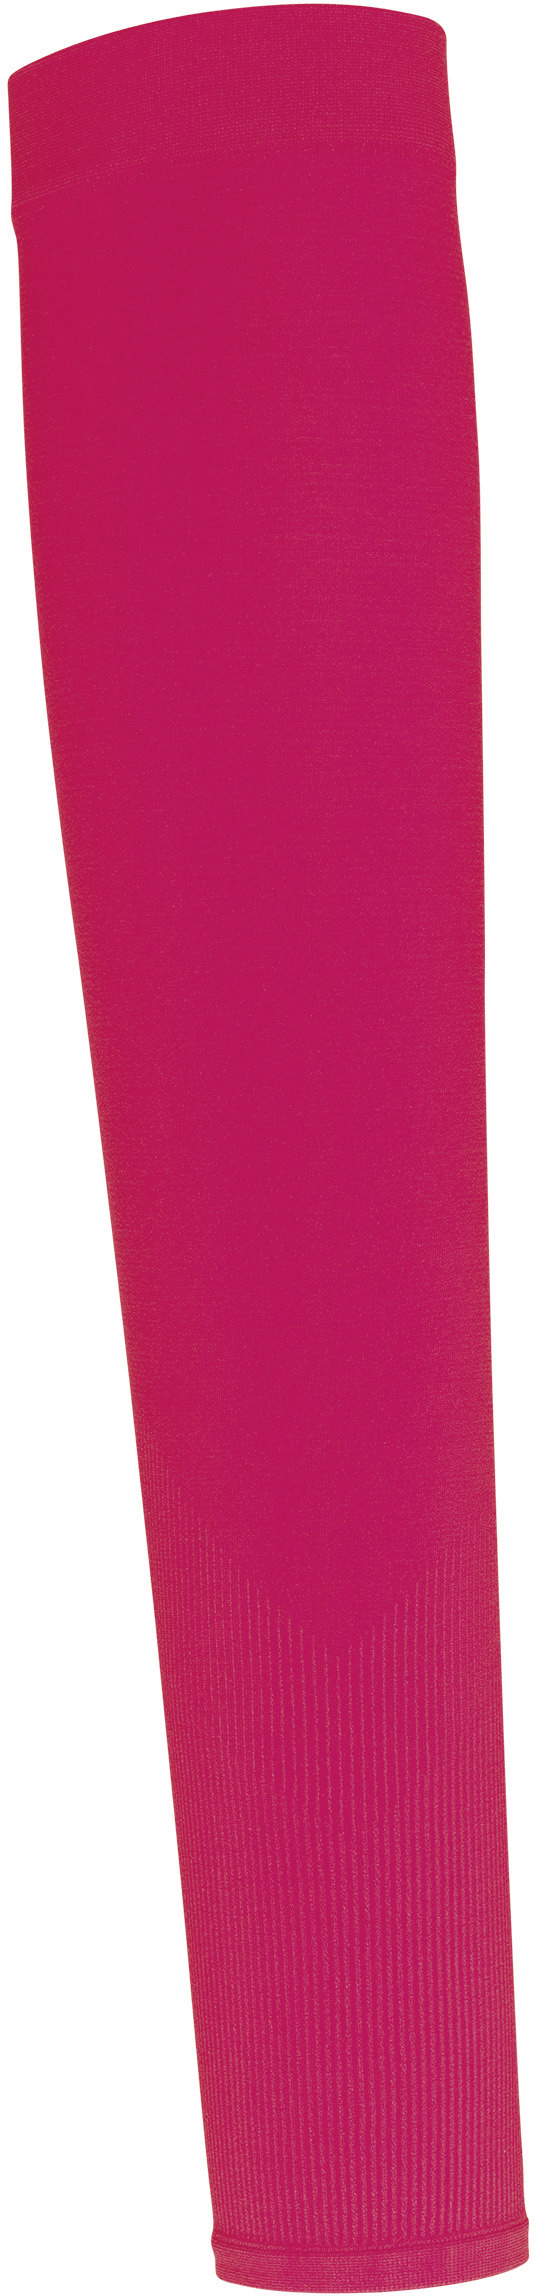 Bezešvé sportovní návleky na ruce PA032 Barva: fuchsia red, Velikost: uni